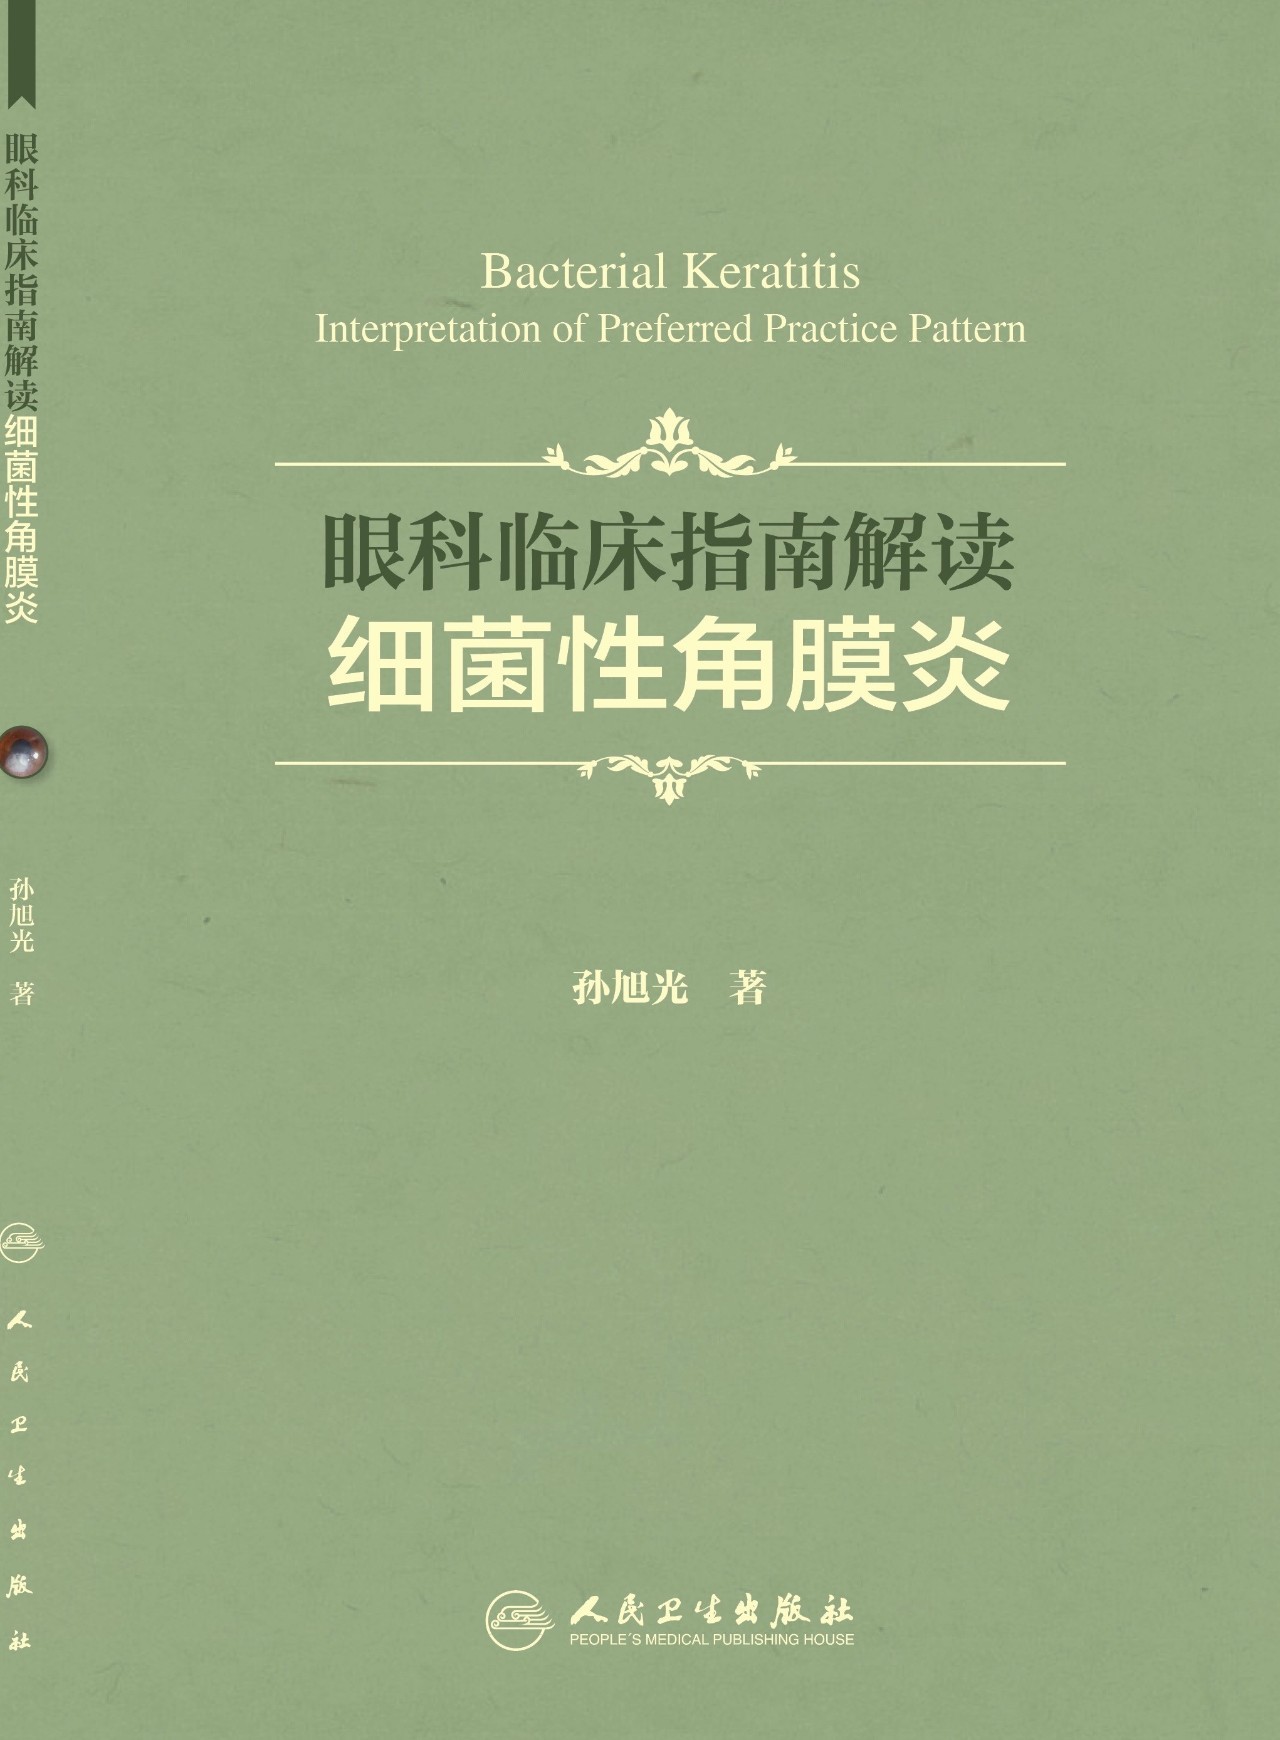 人卫社刘红霞主任专访《细菌性角膜炎》到底是怎样一本书?